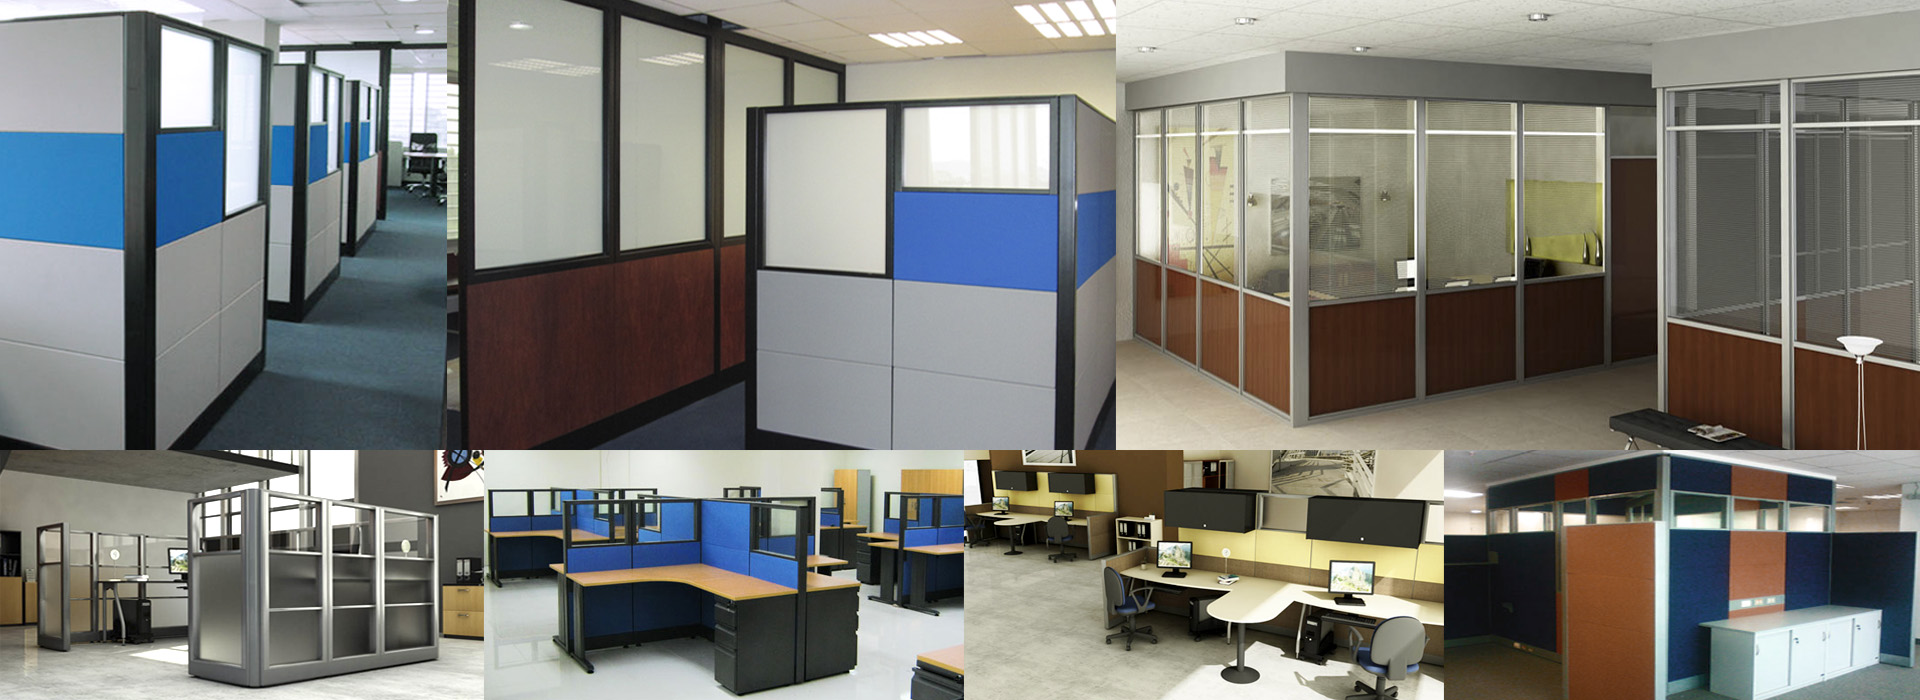 paneles-modulares-piso-a-techo-para-oficinas-modernas